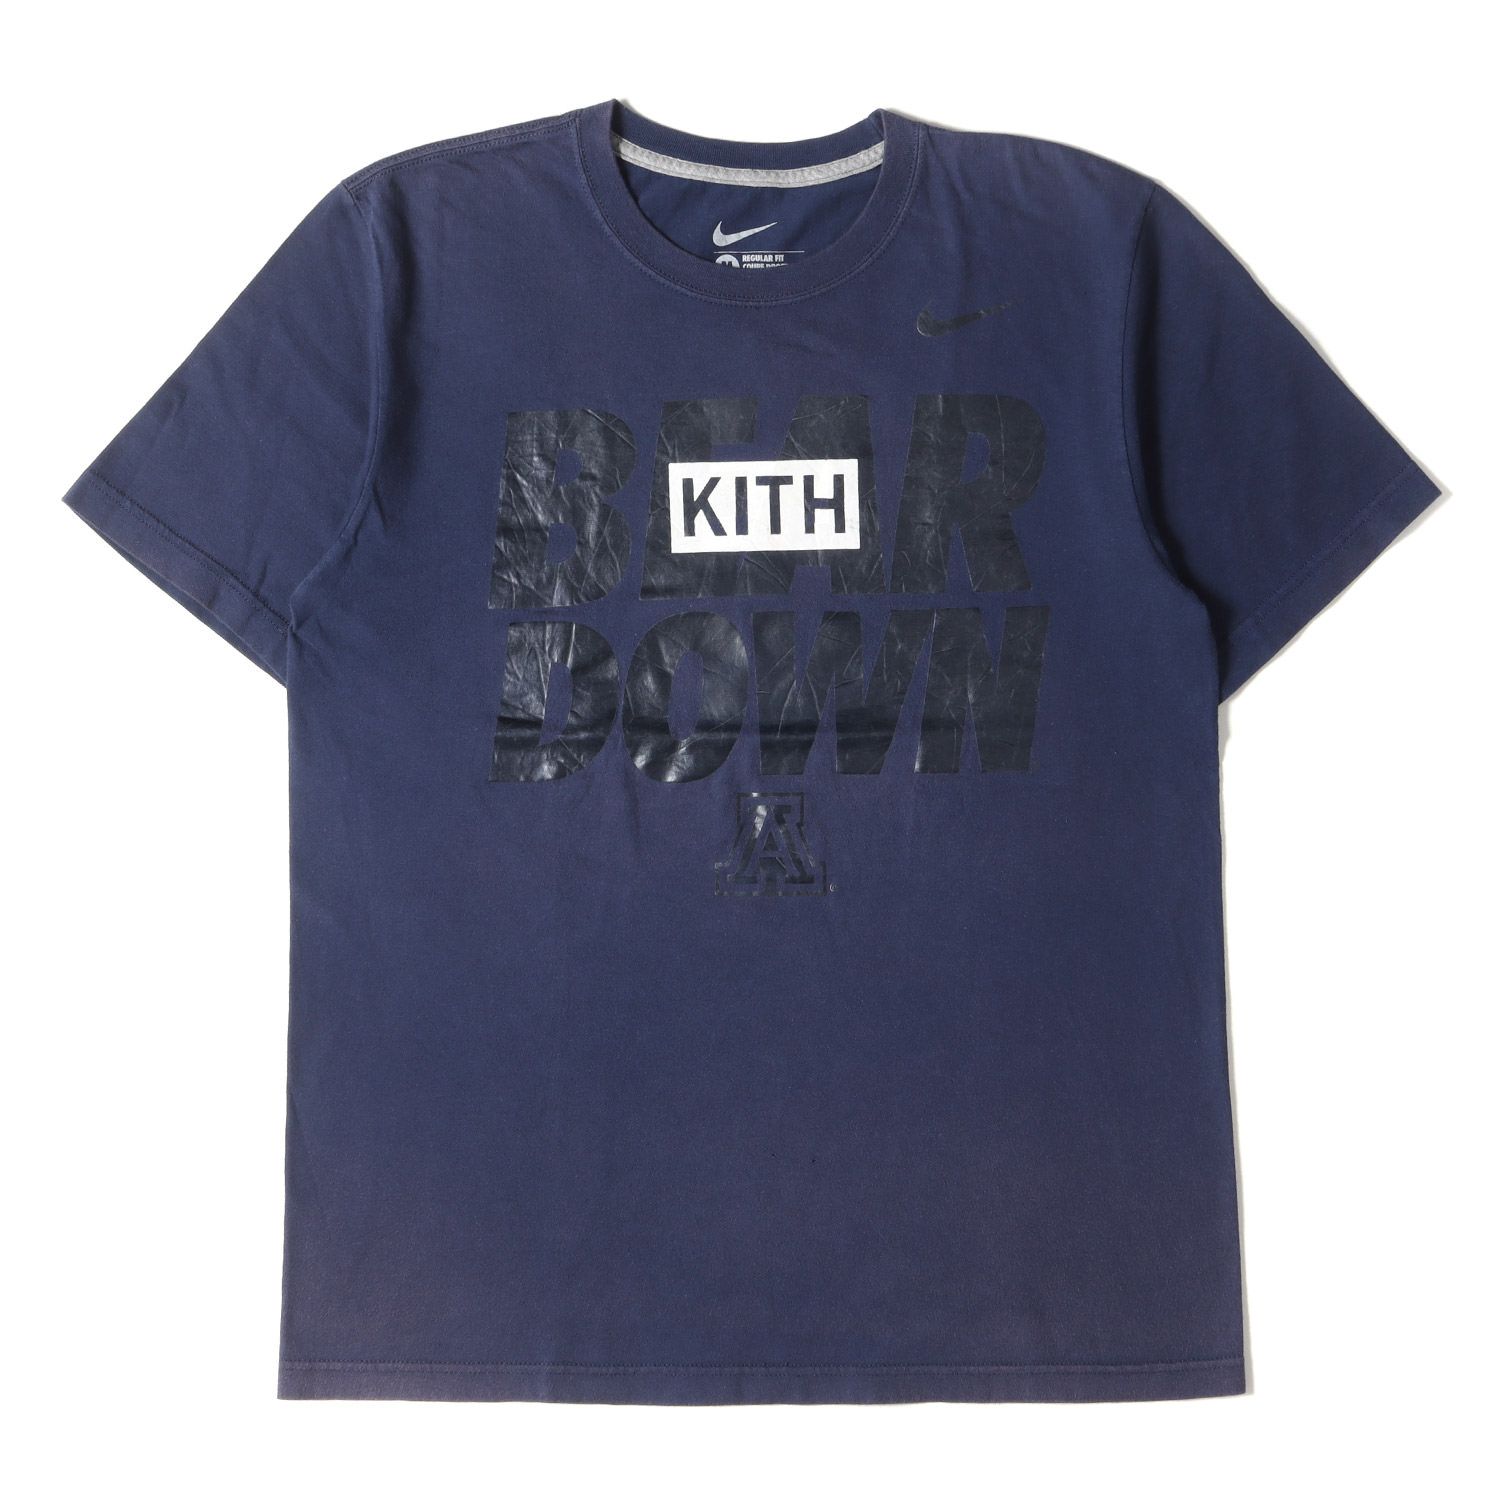 KITH NYC キス ニューヨークシティー Tシャツ サイズ:M KITH TOKYO限定 古着リメイク BOXロゴ クルーネック 半袖 Tシャツ  NIKEボディ ネイビー 紺 トップス カットソー ストリート カジュアル ブランド